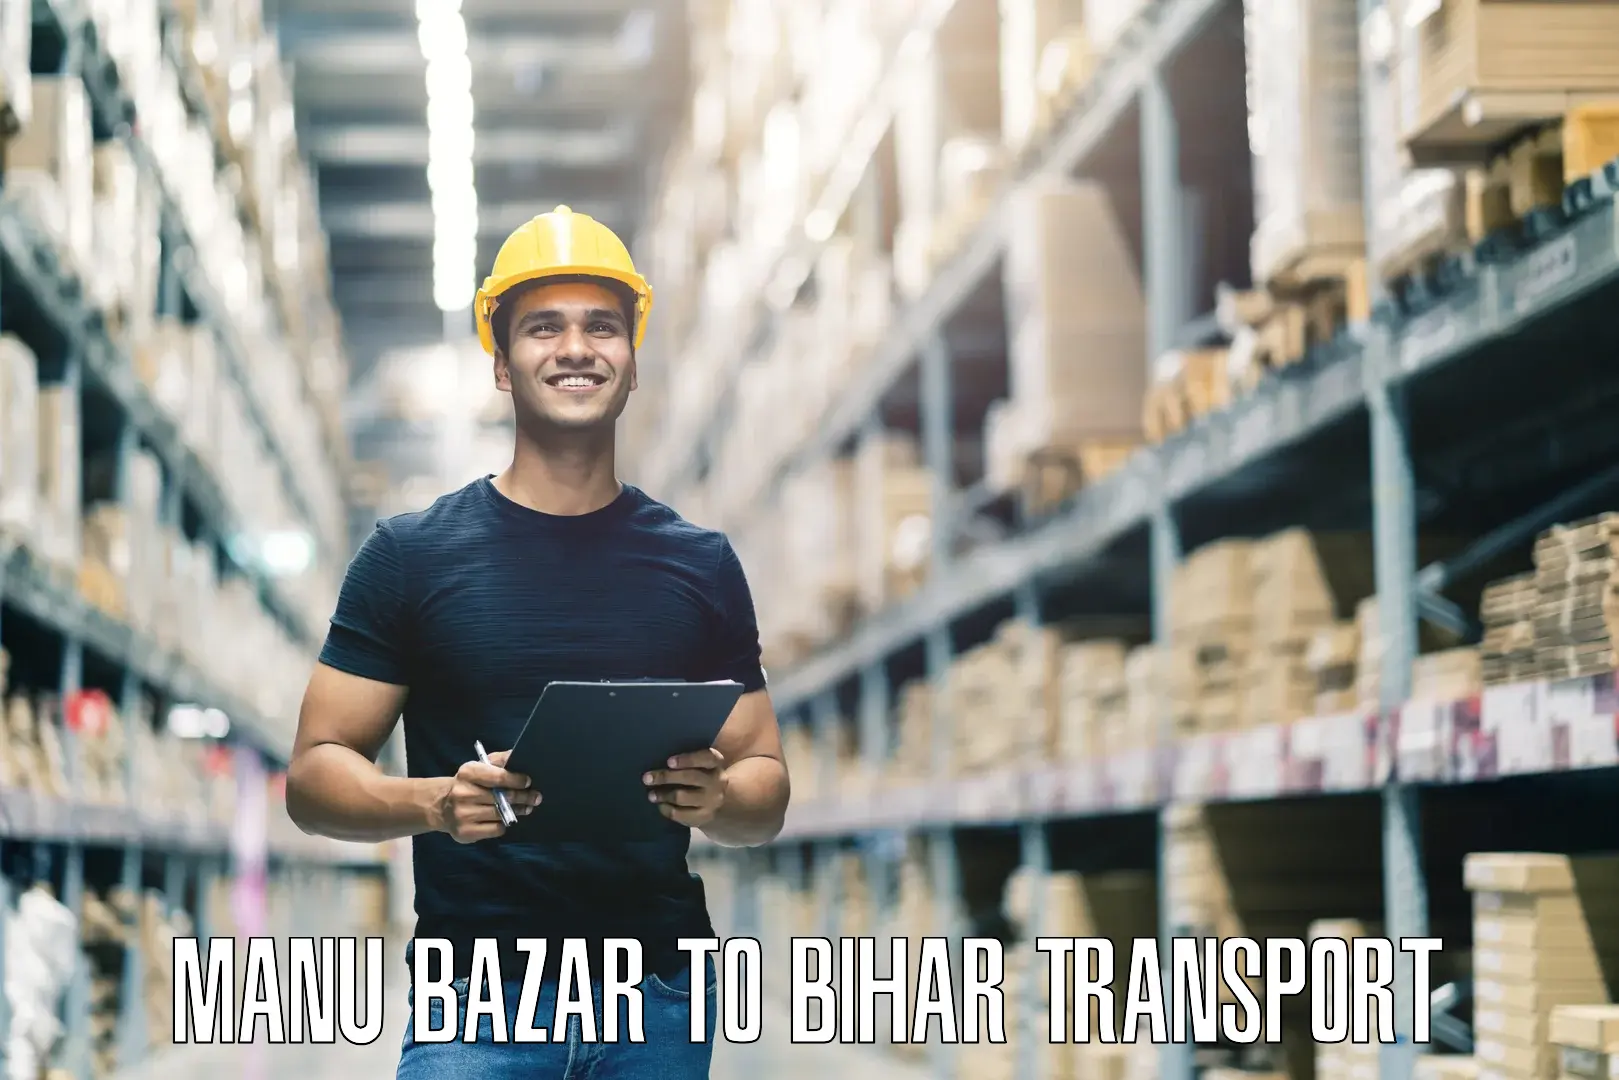 Nearest transport service Manu Bazar to Dalsinghsarai